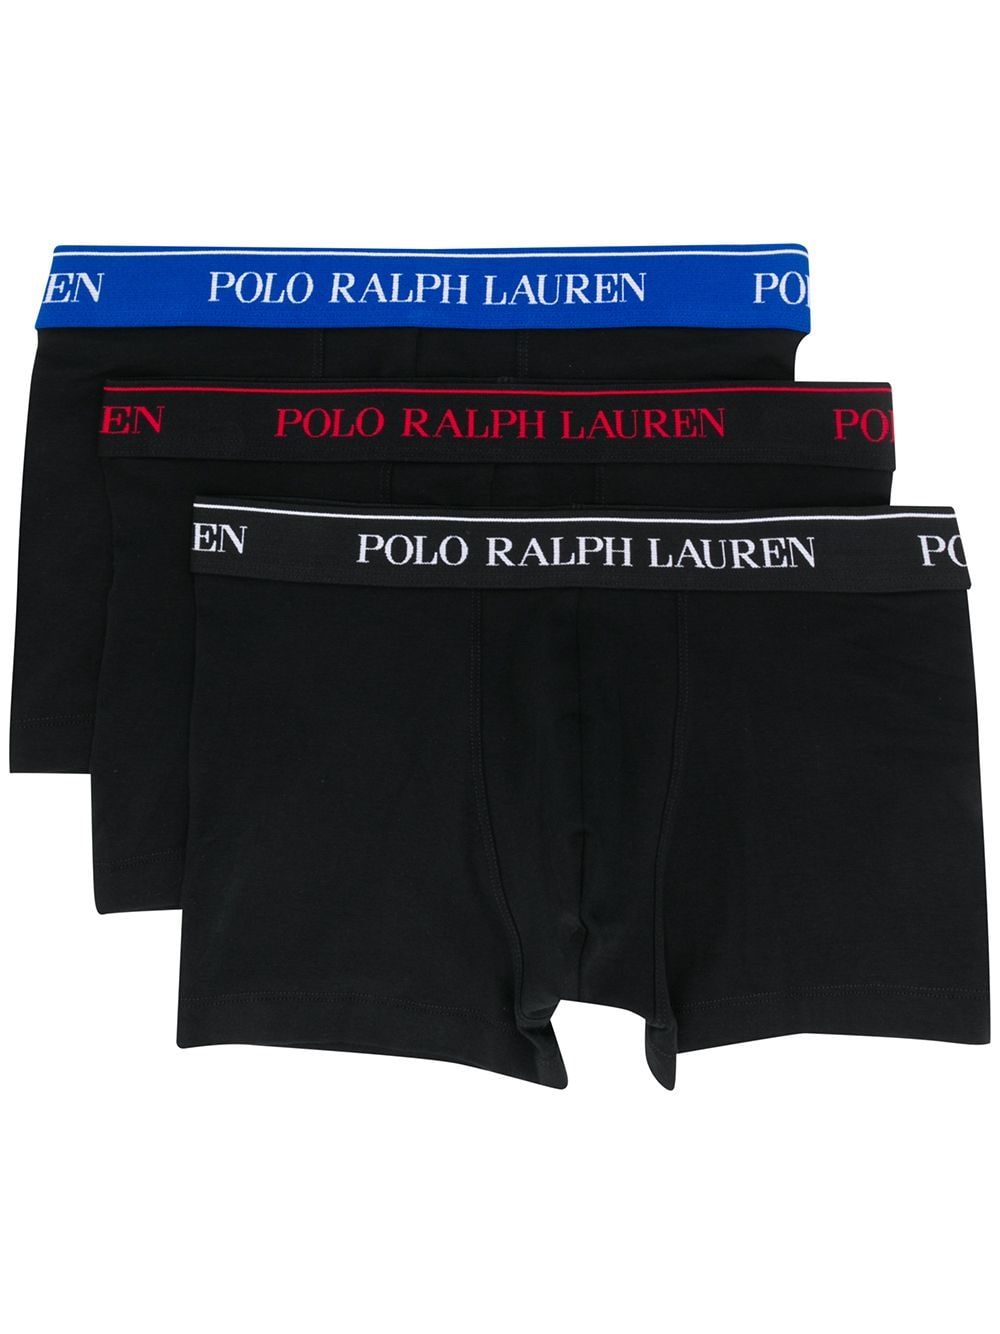 фото Polo ralph lauren комплект из трех боксеров с логотипом